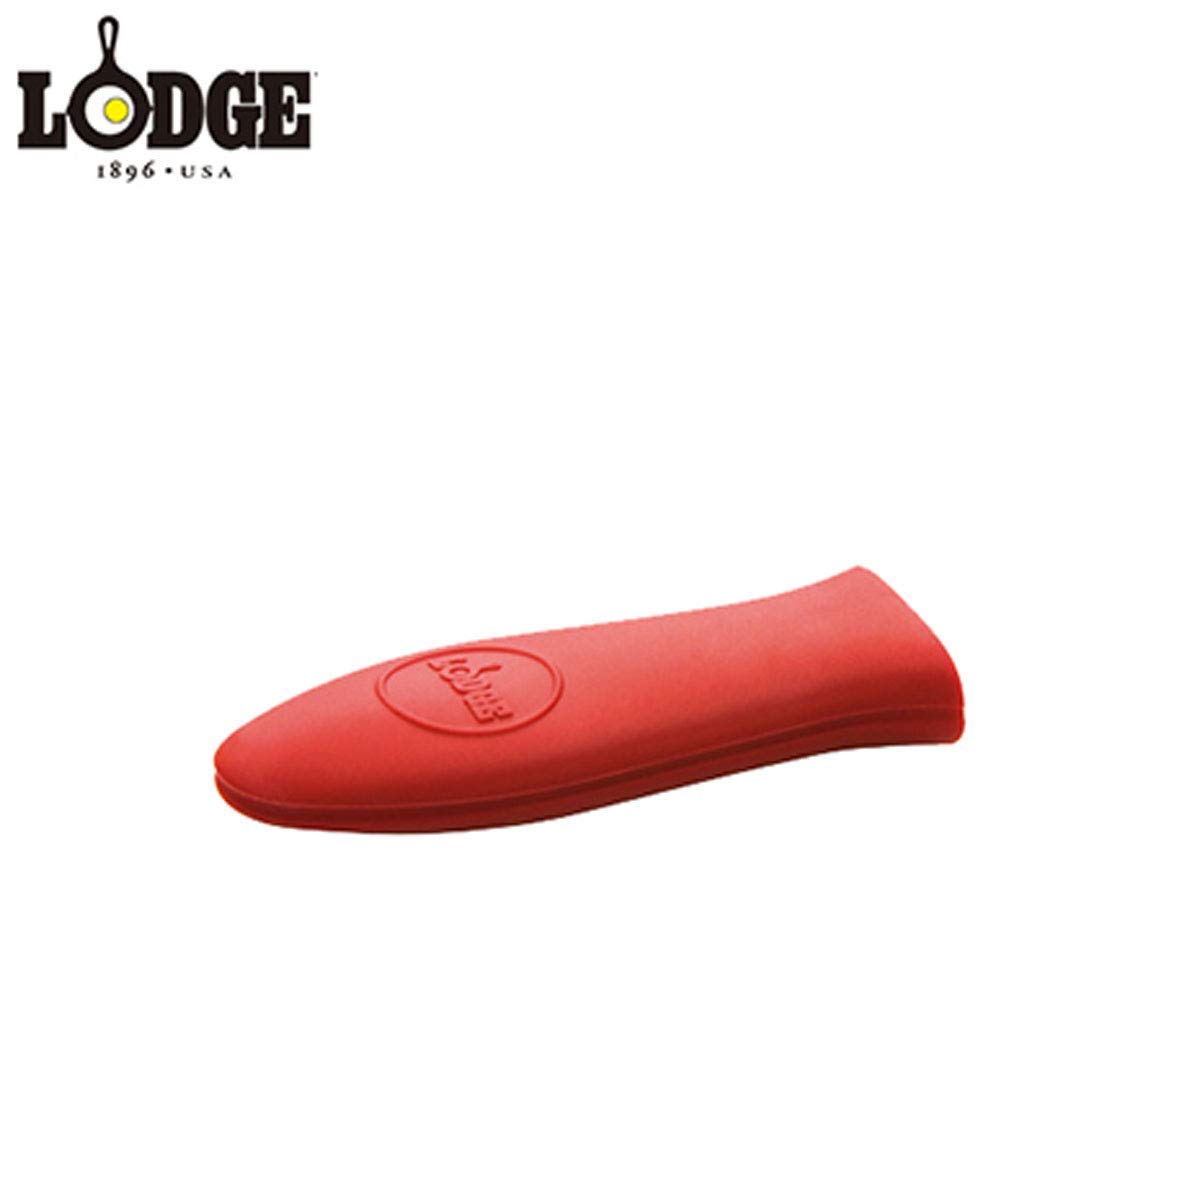 Lodge Cast Iron Silicone Brush Melting Pot, 15.2 oz, Black & ASHHM41 Mini Silicone Hot Handle Holder, Red